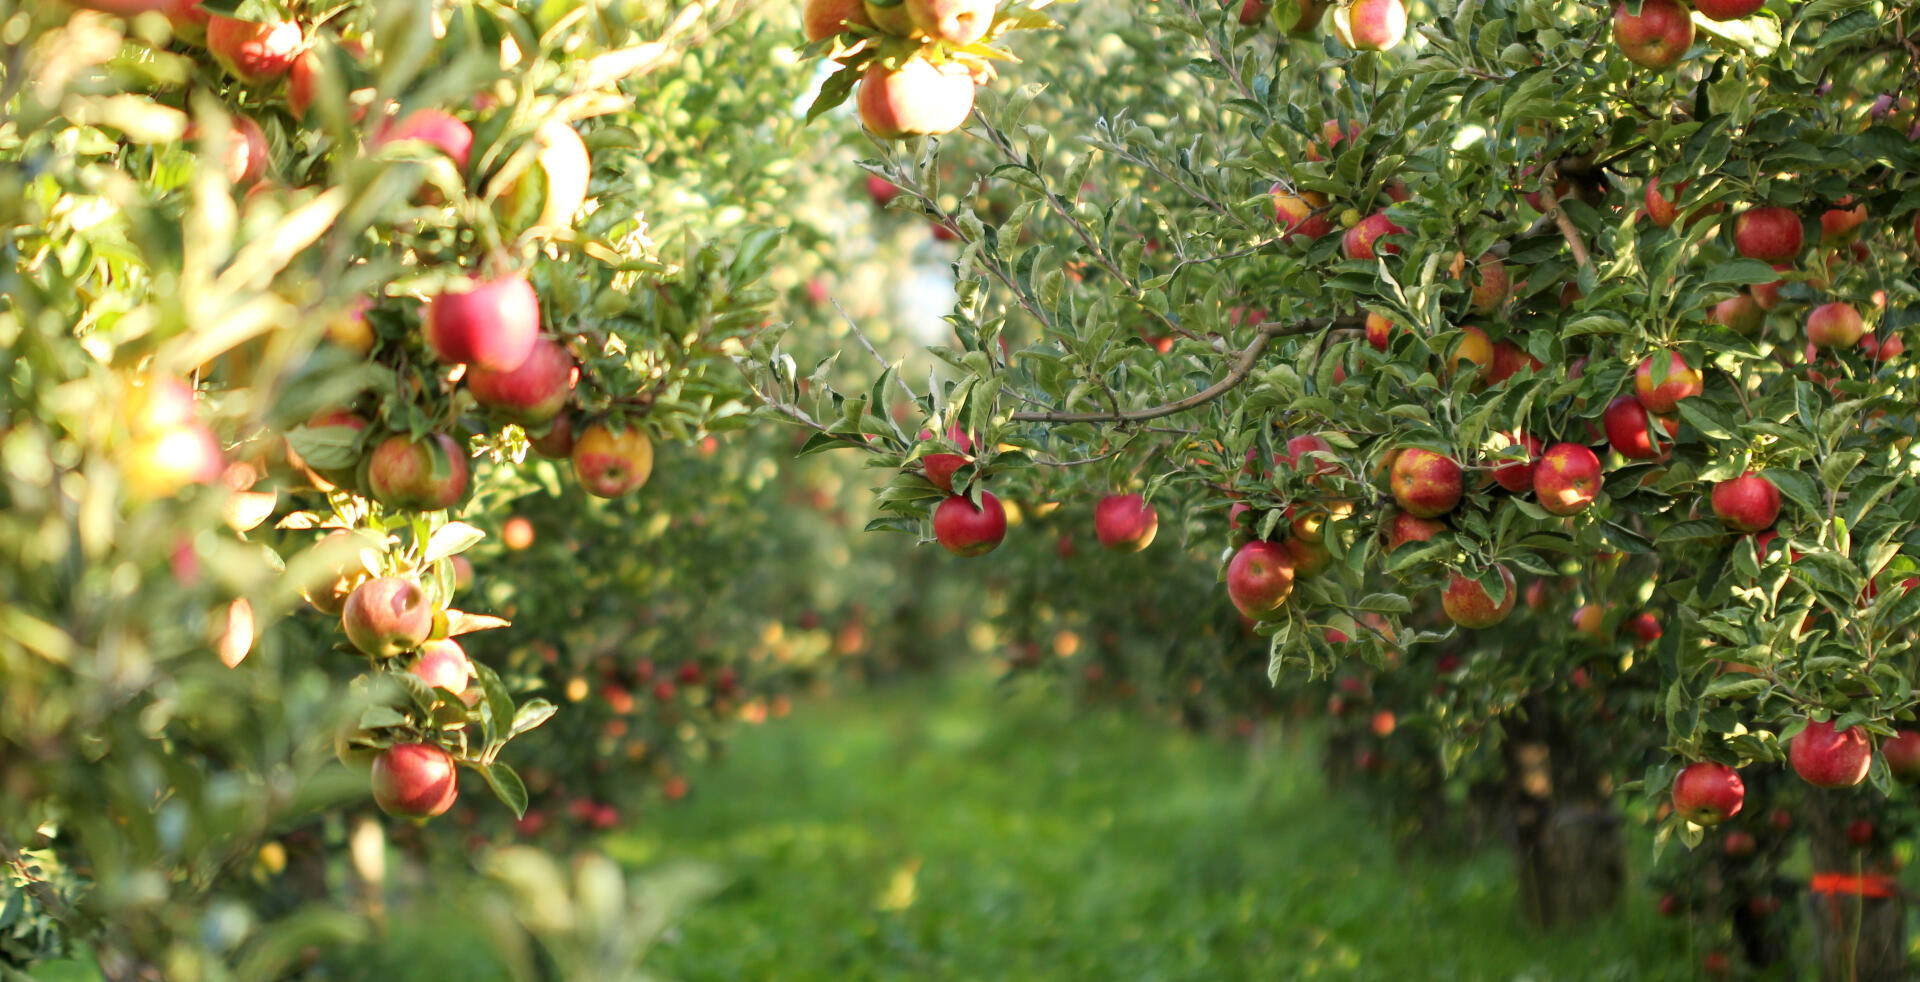 Apfelbaum kaufen: In 6 Schritten zur idealen Sorte - Mein schöner